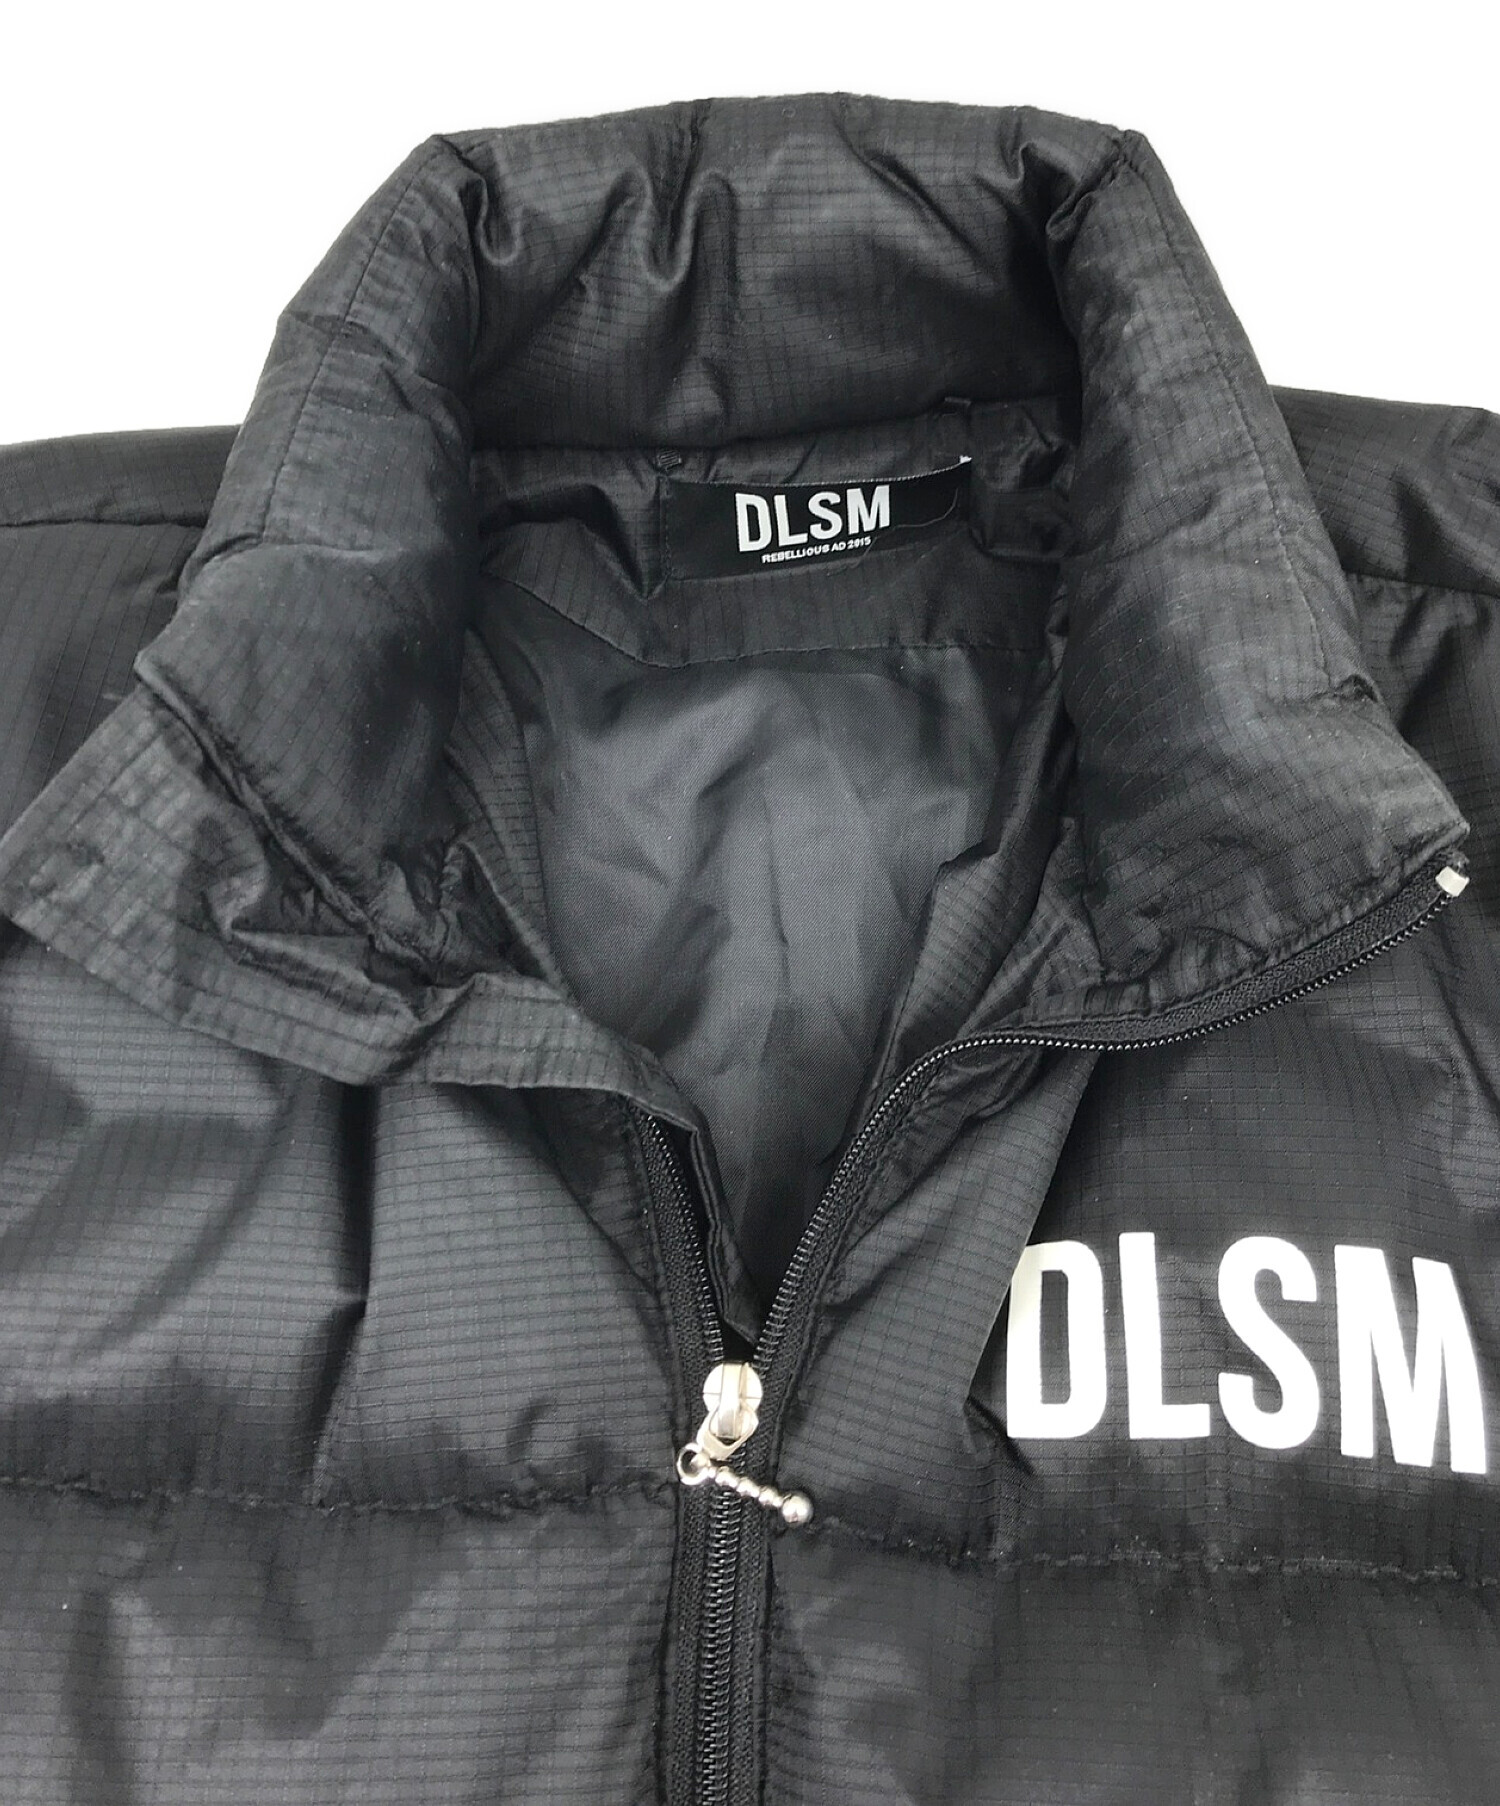 DLSM (ディーエルエスエム) ダウンジャケット ブラック サイズ:実寸をご確認ください。